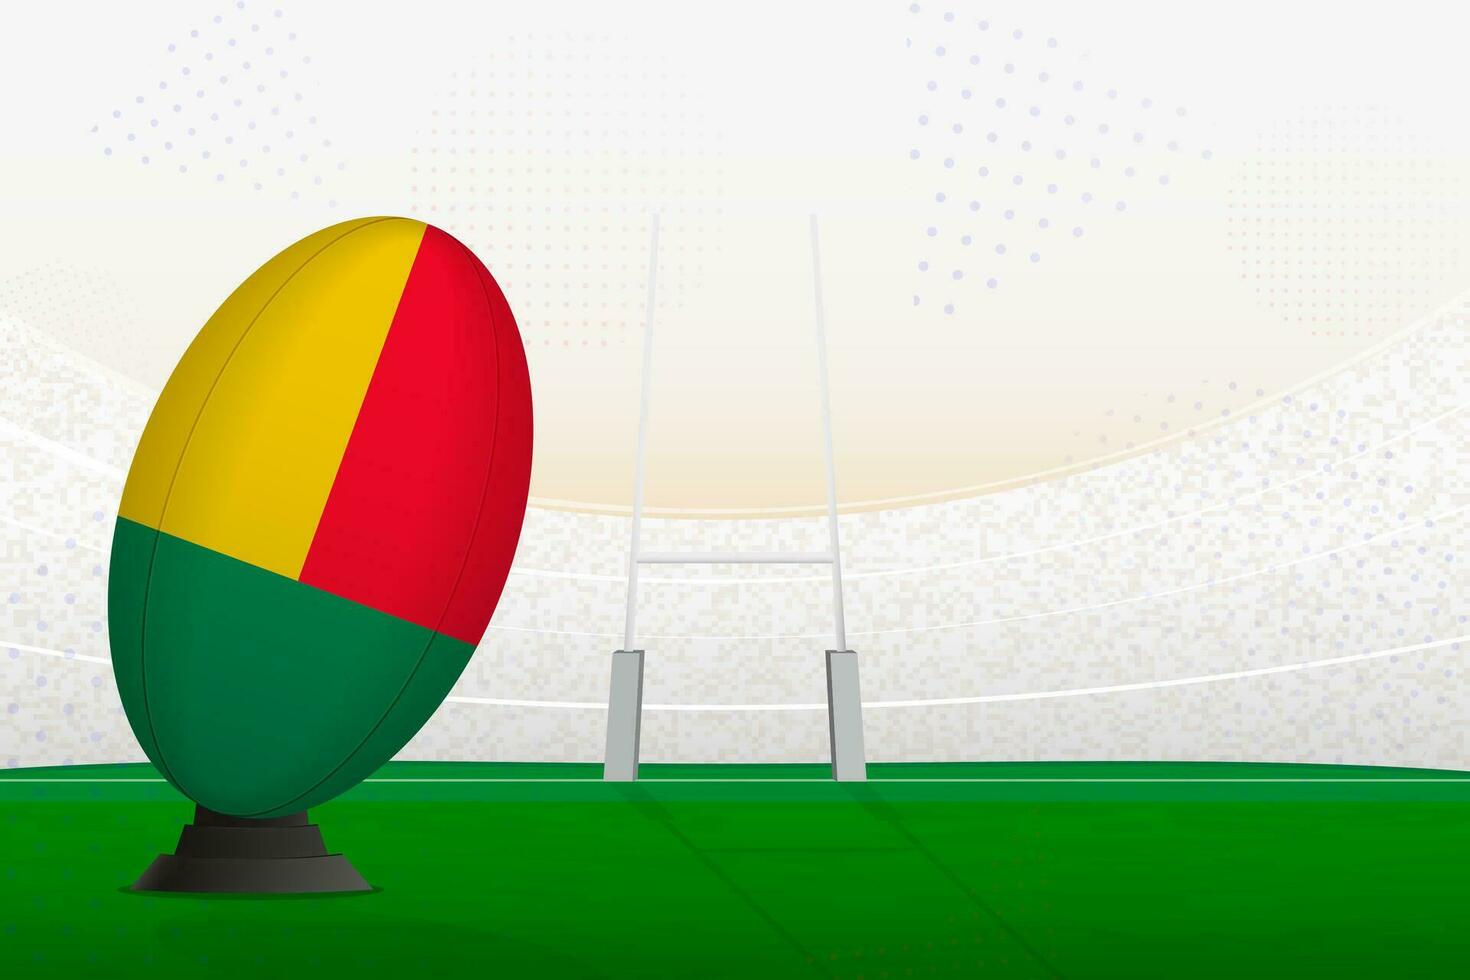 benin nacional equipo rugby pelota en rugby estadio y objetivo publicaciones, preparando para un multa o gratis patada. vector